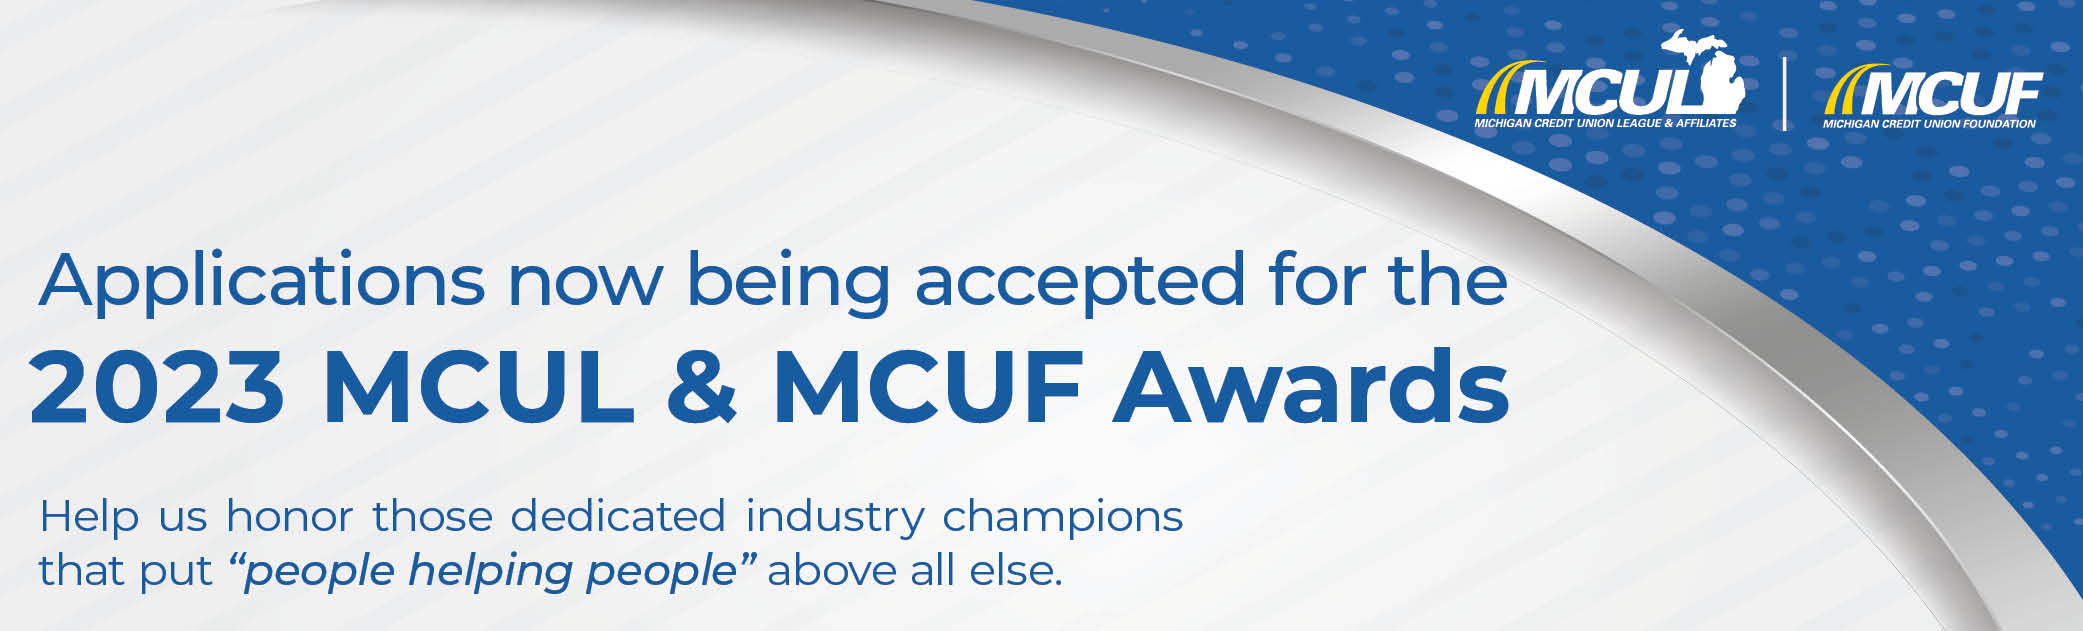 MCUL Award Launch 23